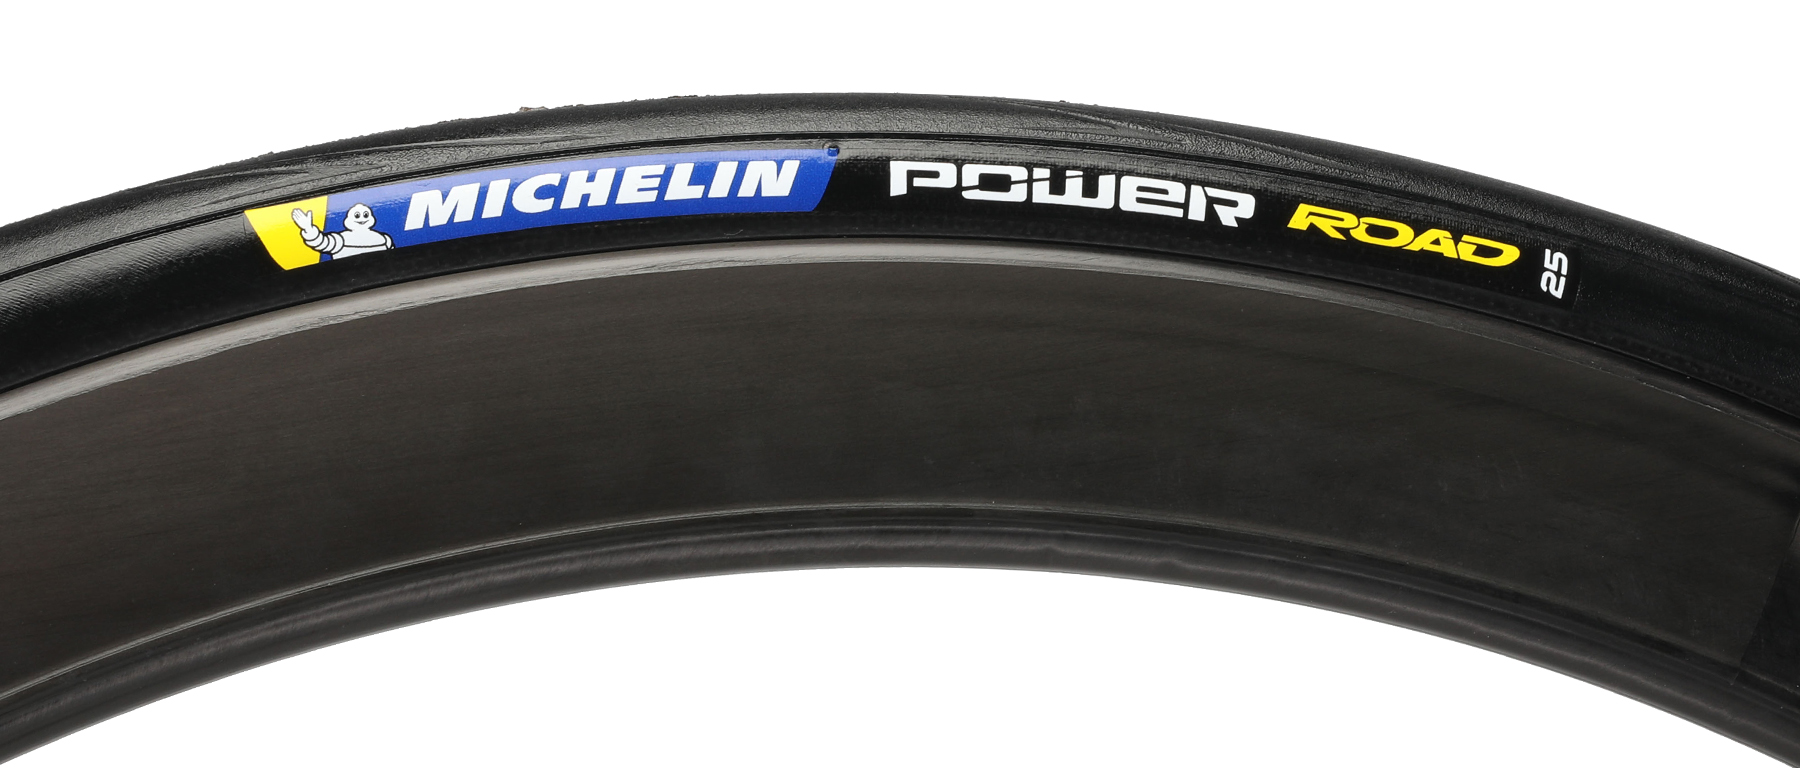 Michelin Power Road TS Tire